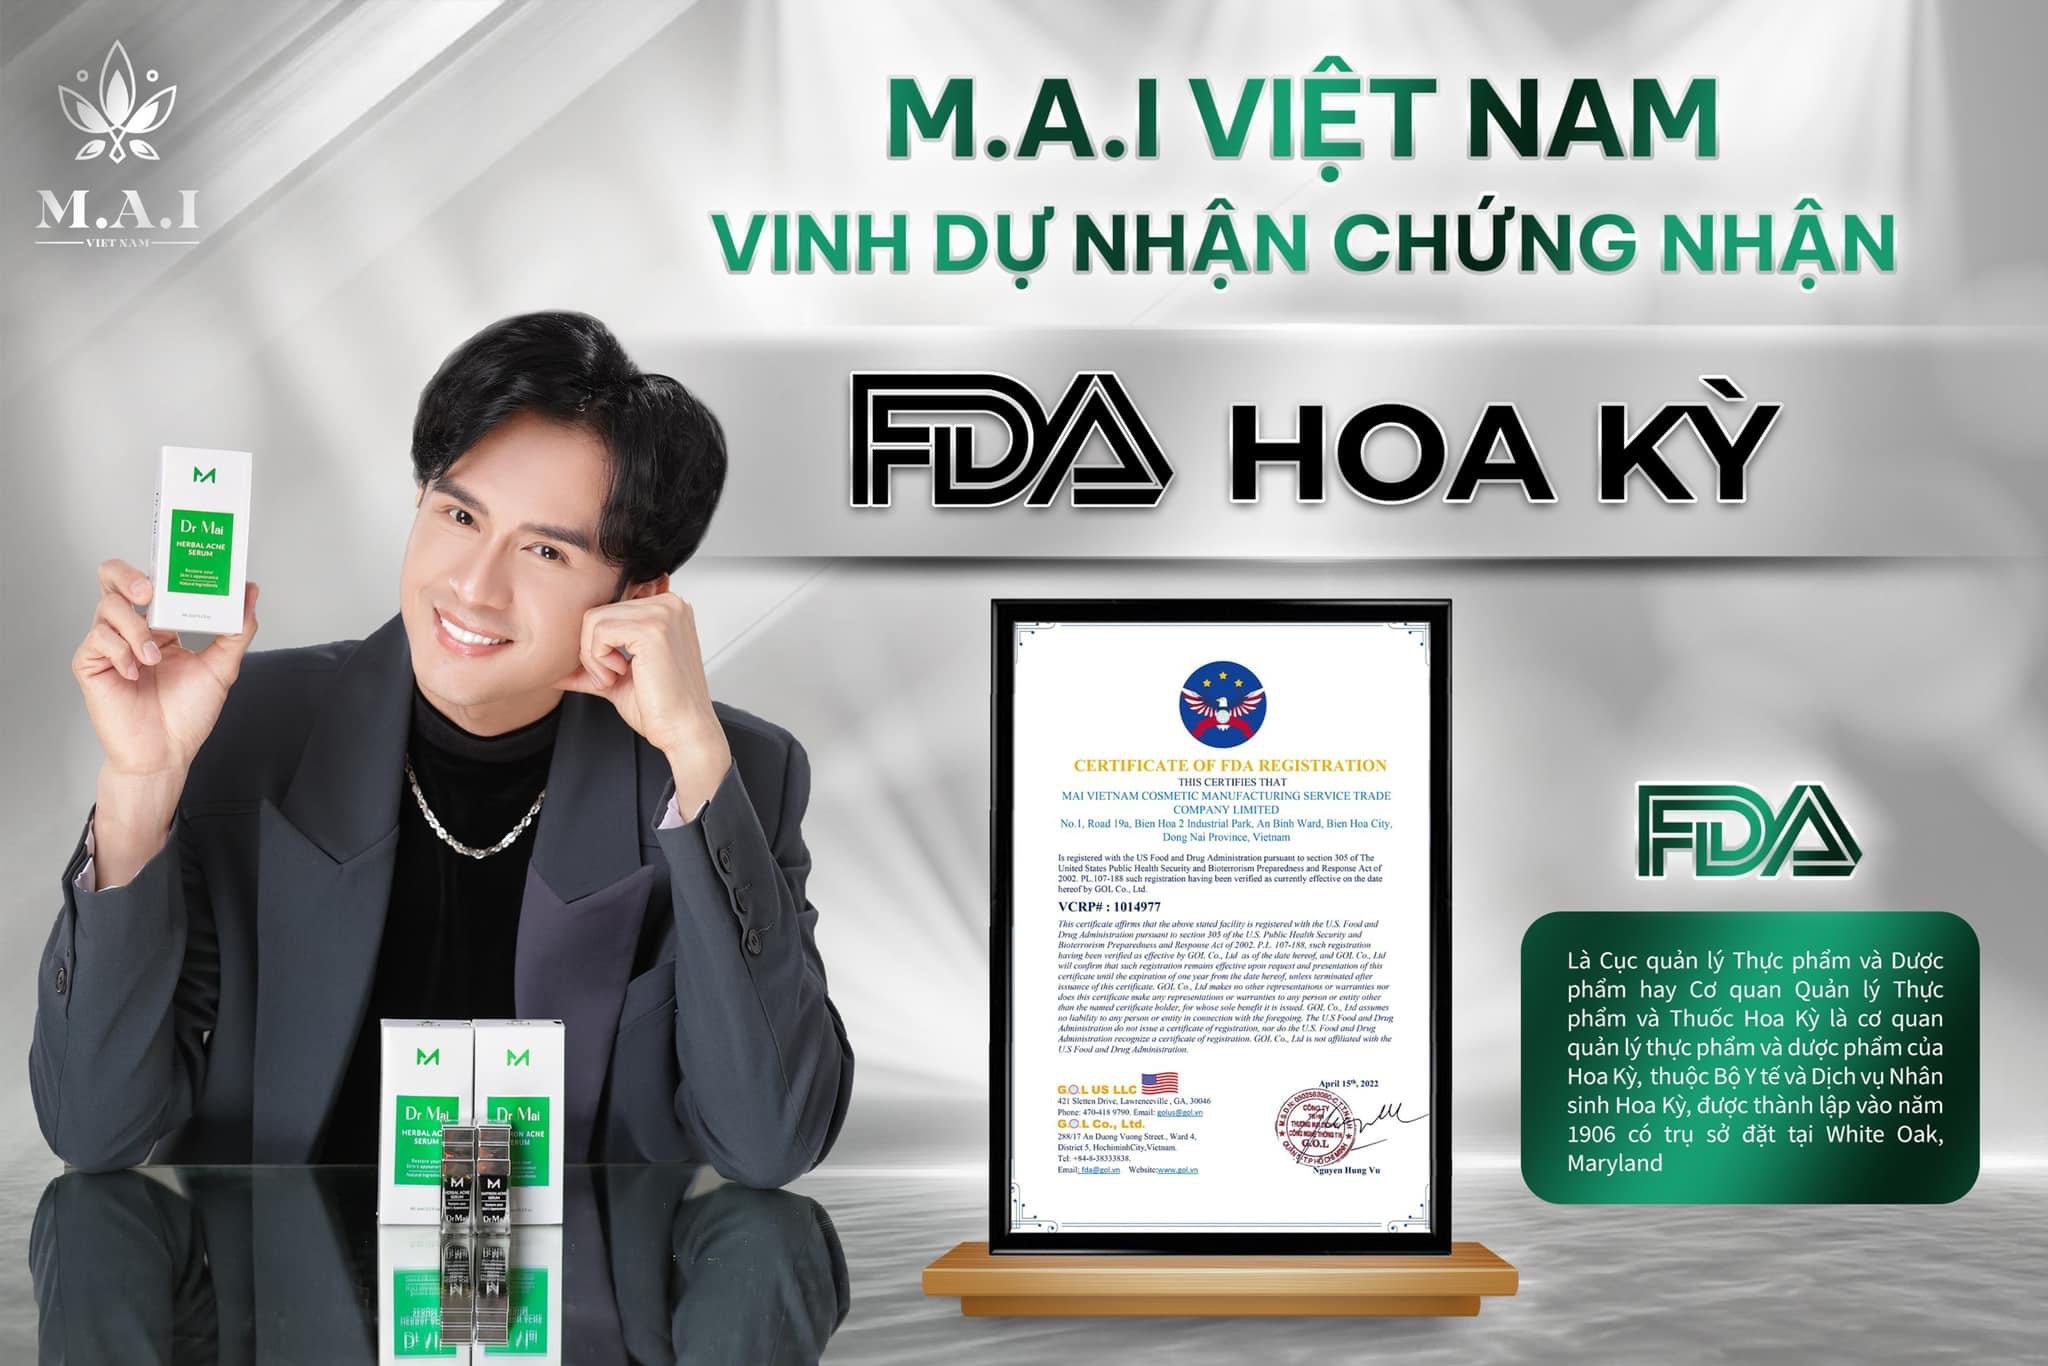 DR MAI HỖ TRỢ TRỊ MỤN TẬN GỐC - Dược sĩ tư vấn 0902.906.357 - maivietnam.vn